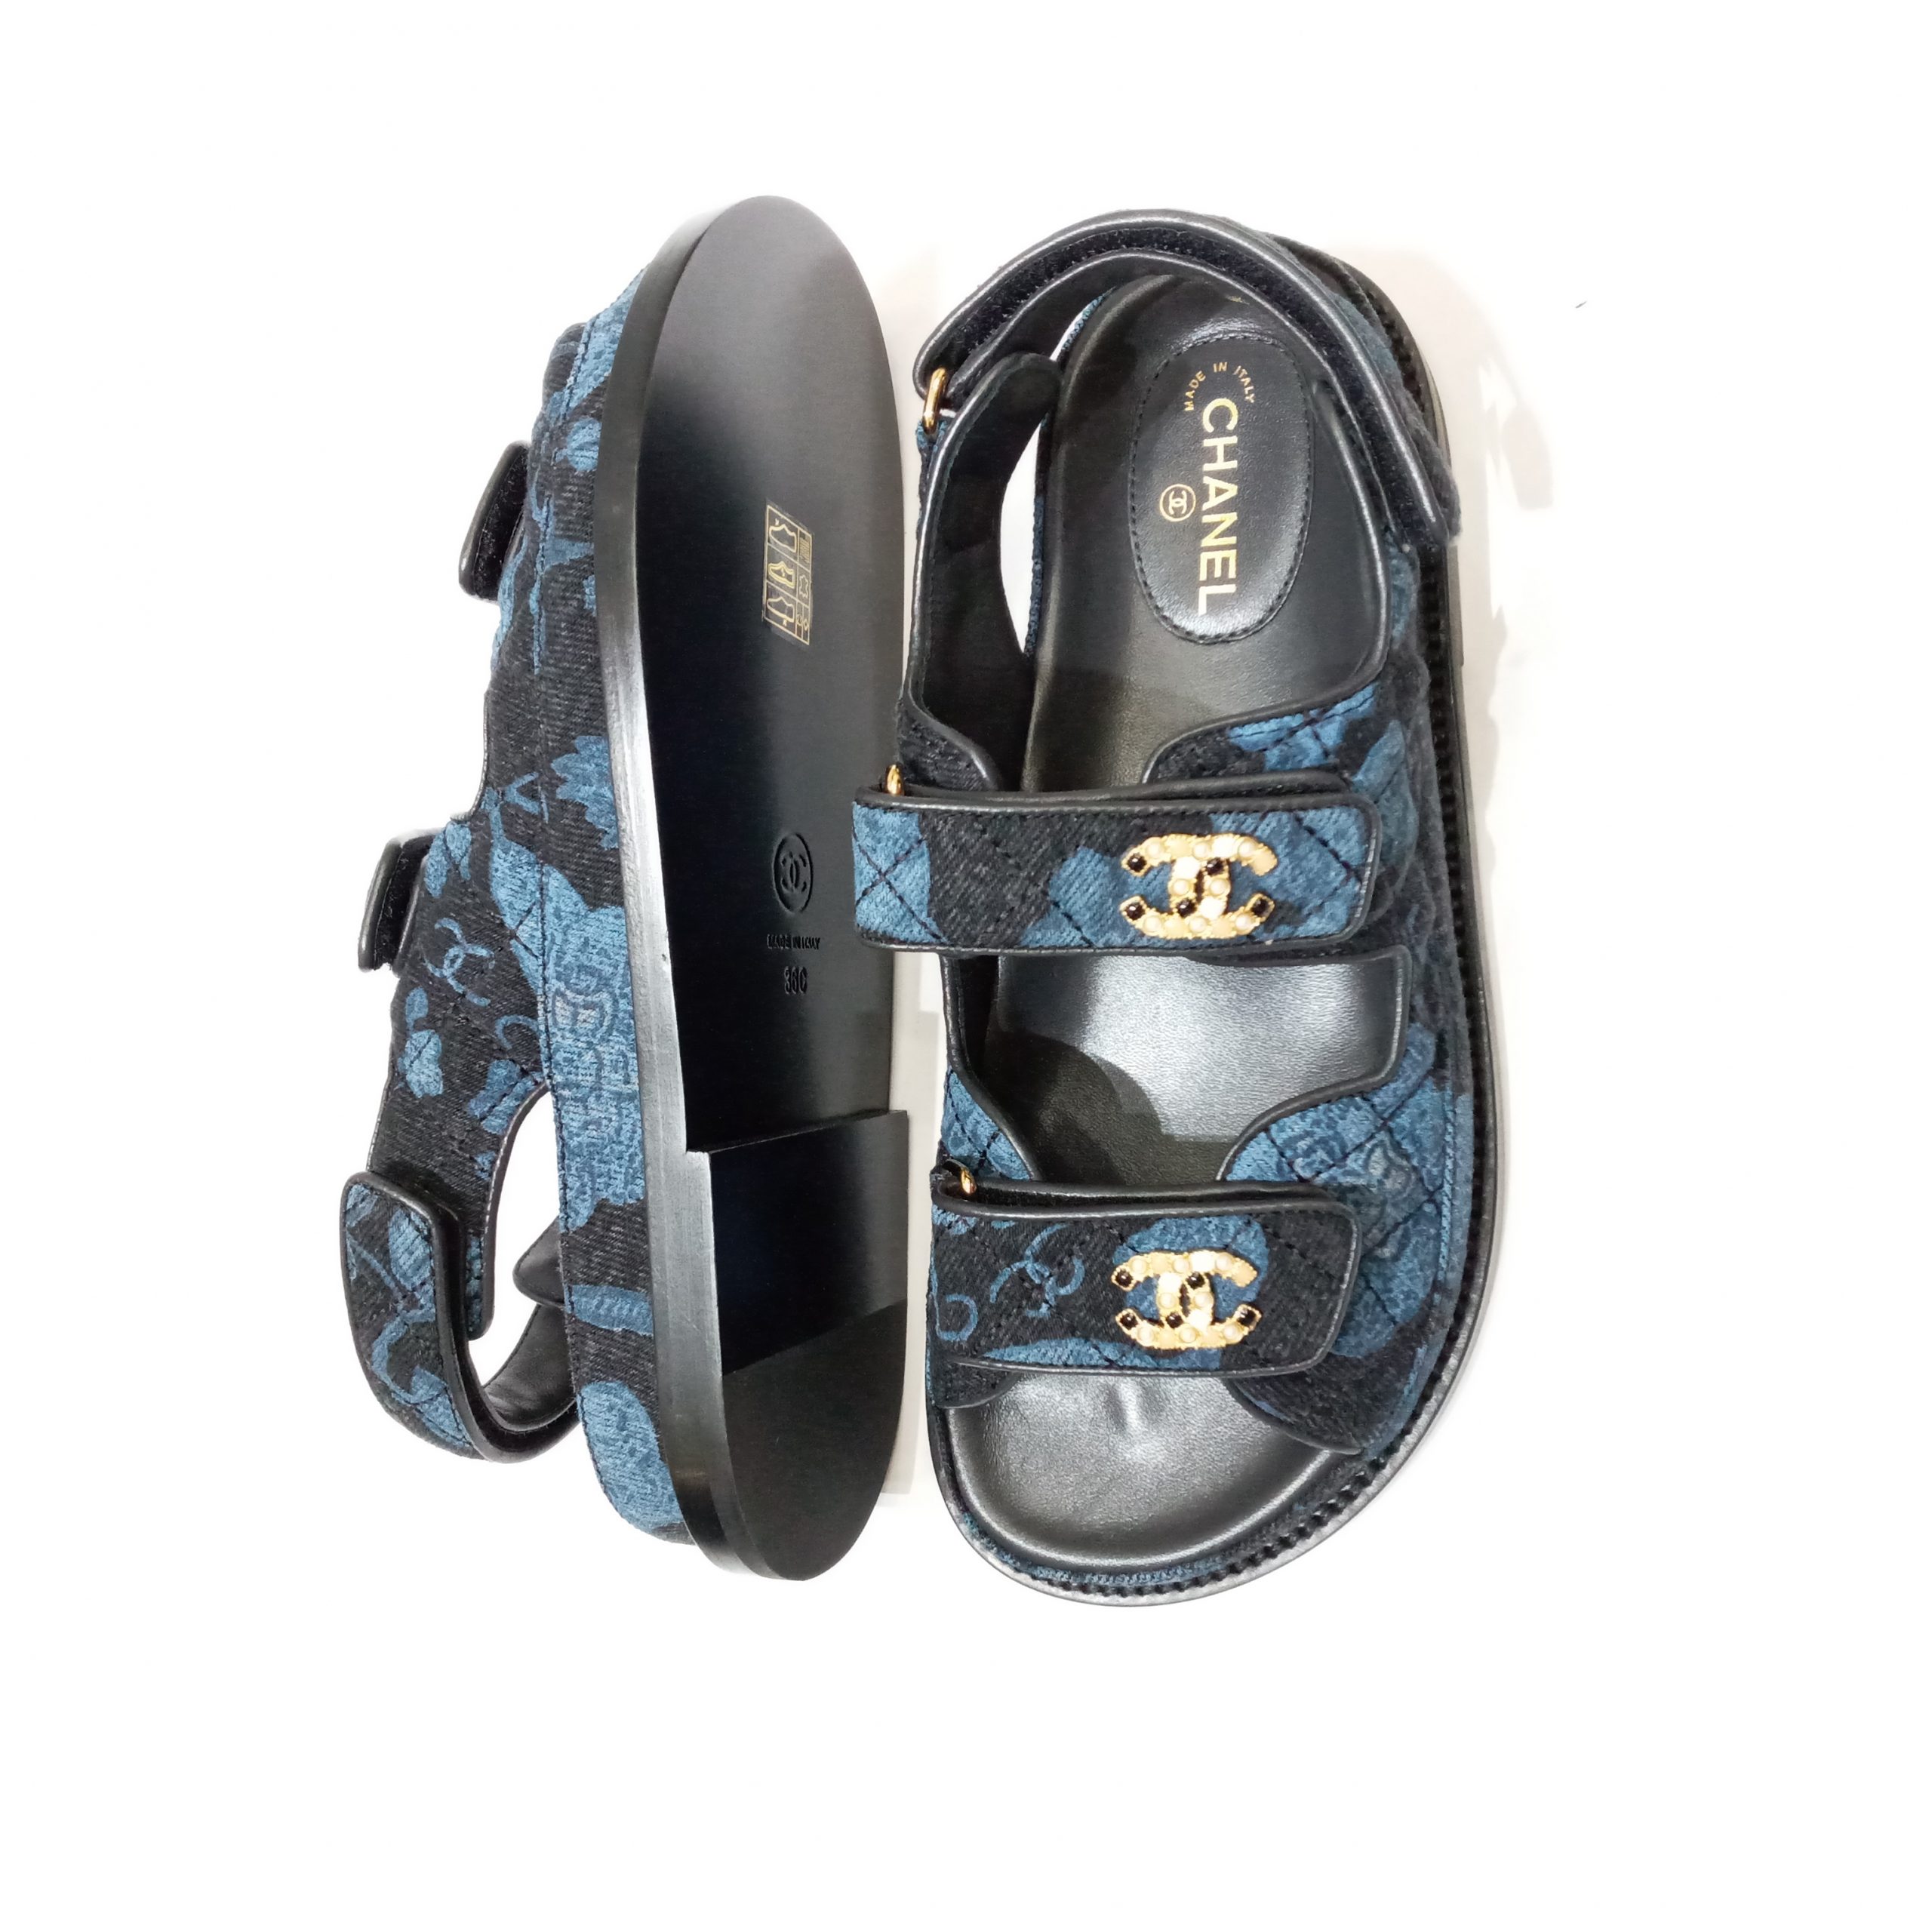 Chanel Denim Dad Sandal. “Grey Velvet” color. New in box. 38.5